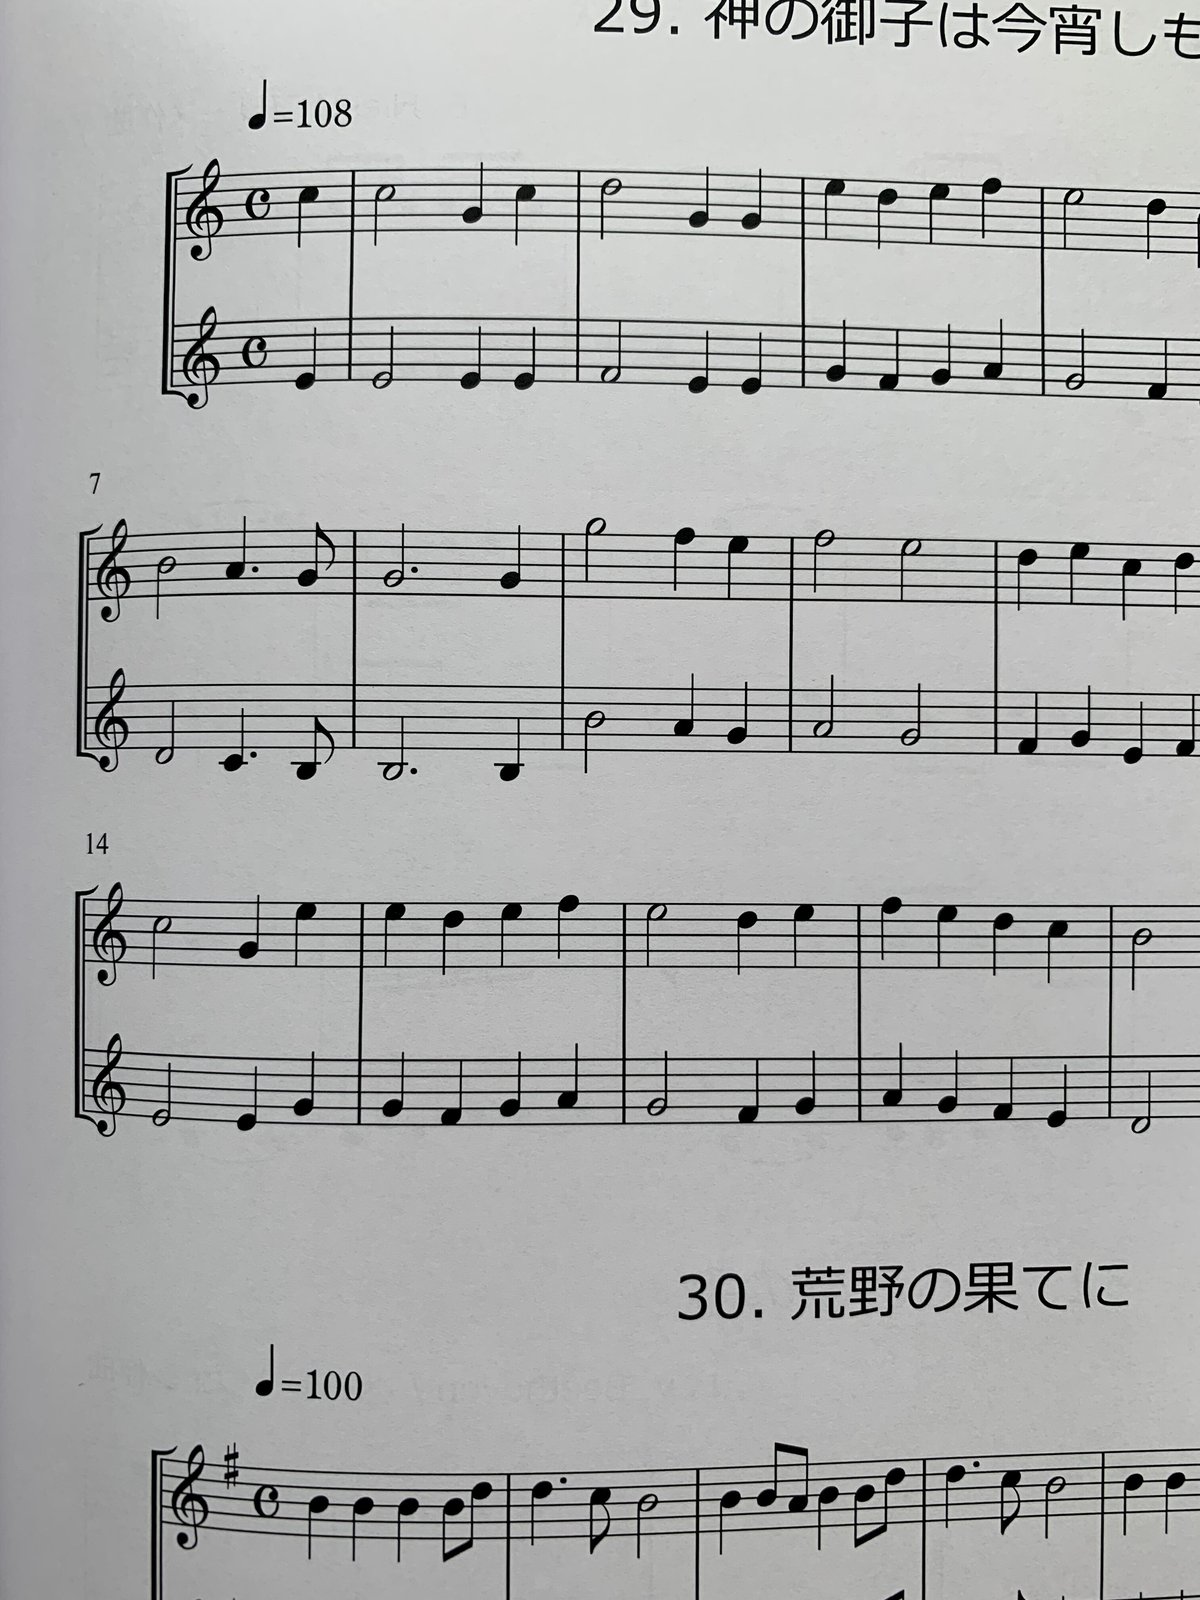 トランペット楽譜 ソロ&デュエットで楽しむ「メロディ練習曲集